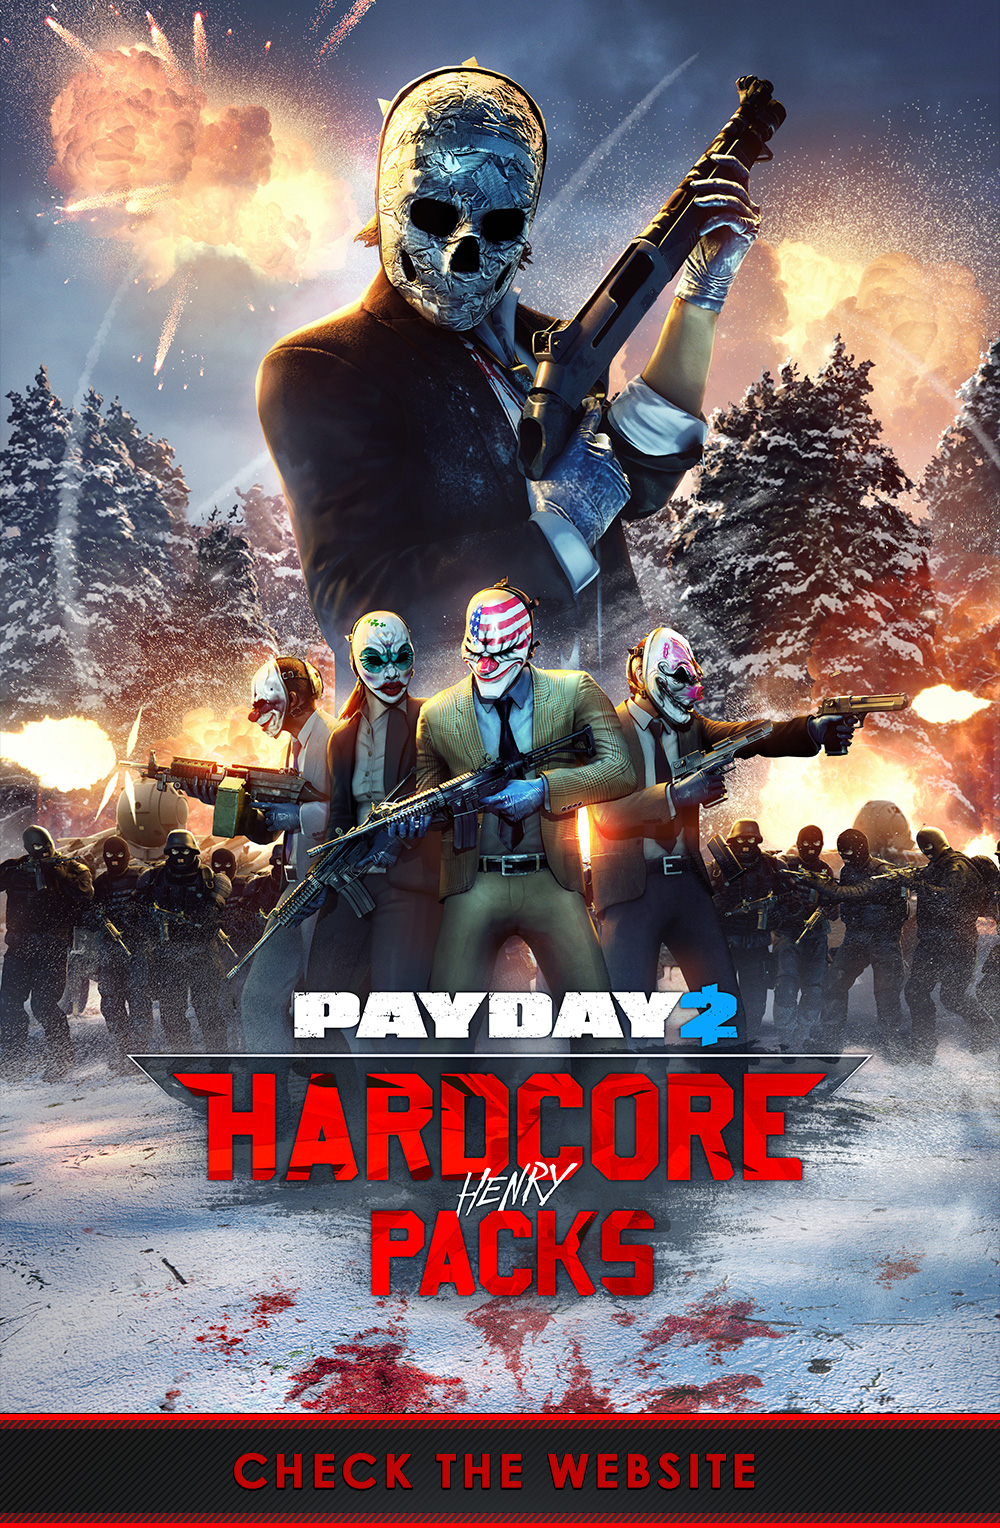 Payday2 goes Hardcore